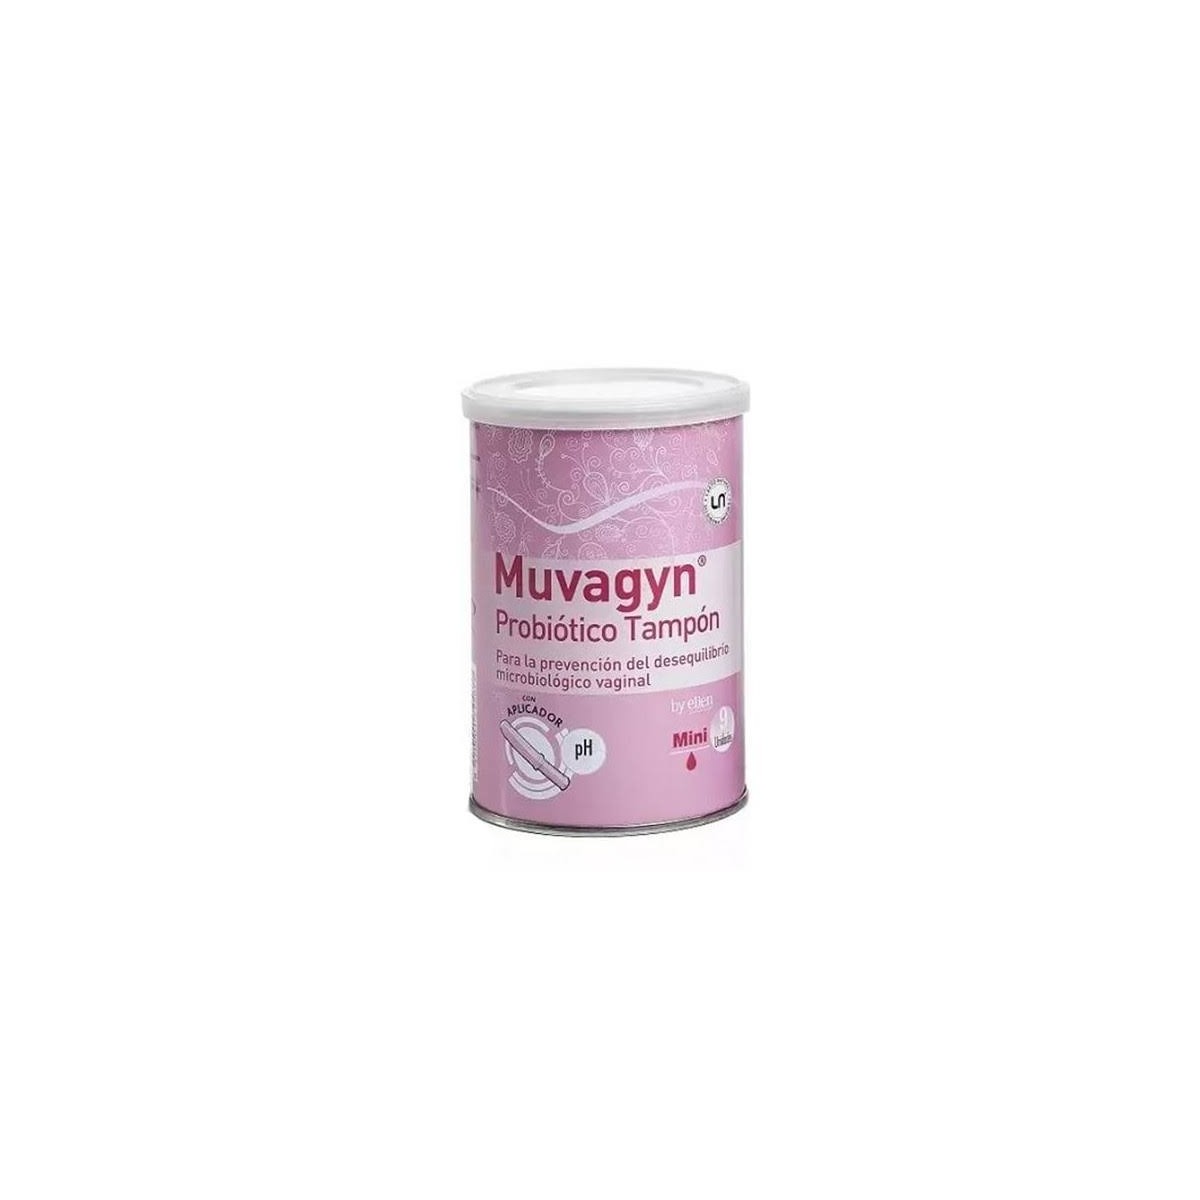 muvagyn probiotico tampon mini con aplicador 9u